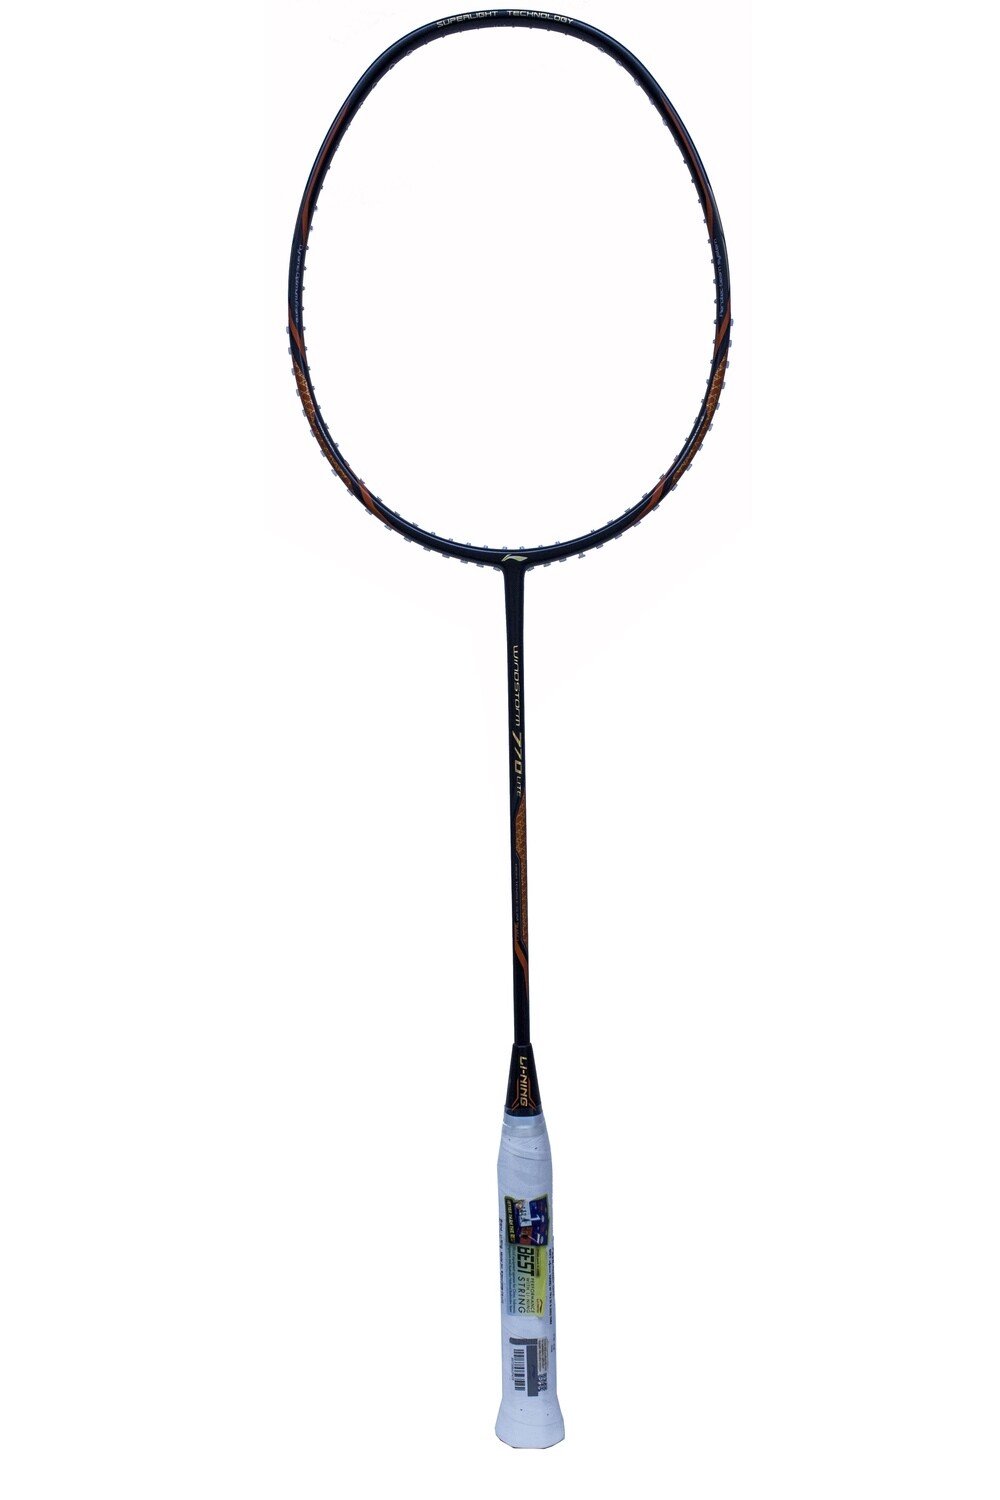 LI-NING Windstorm 770 Lite Badminton Racquet -